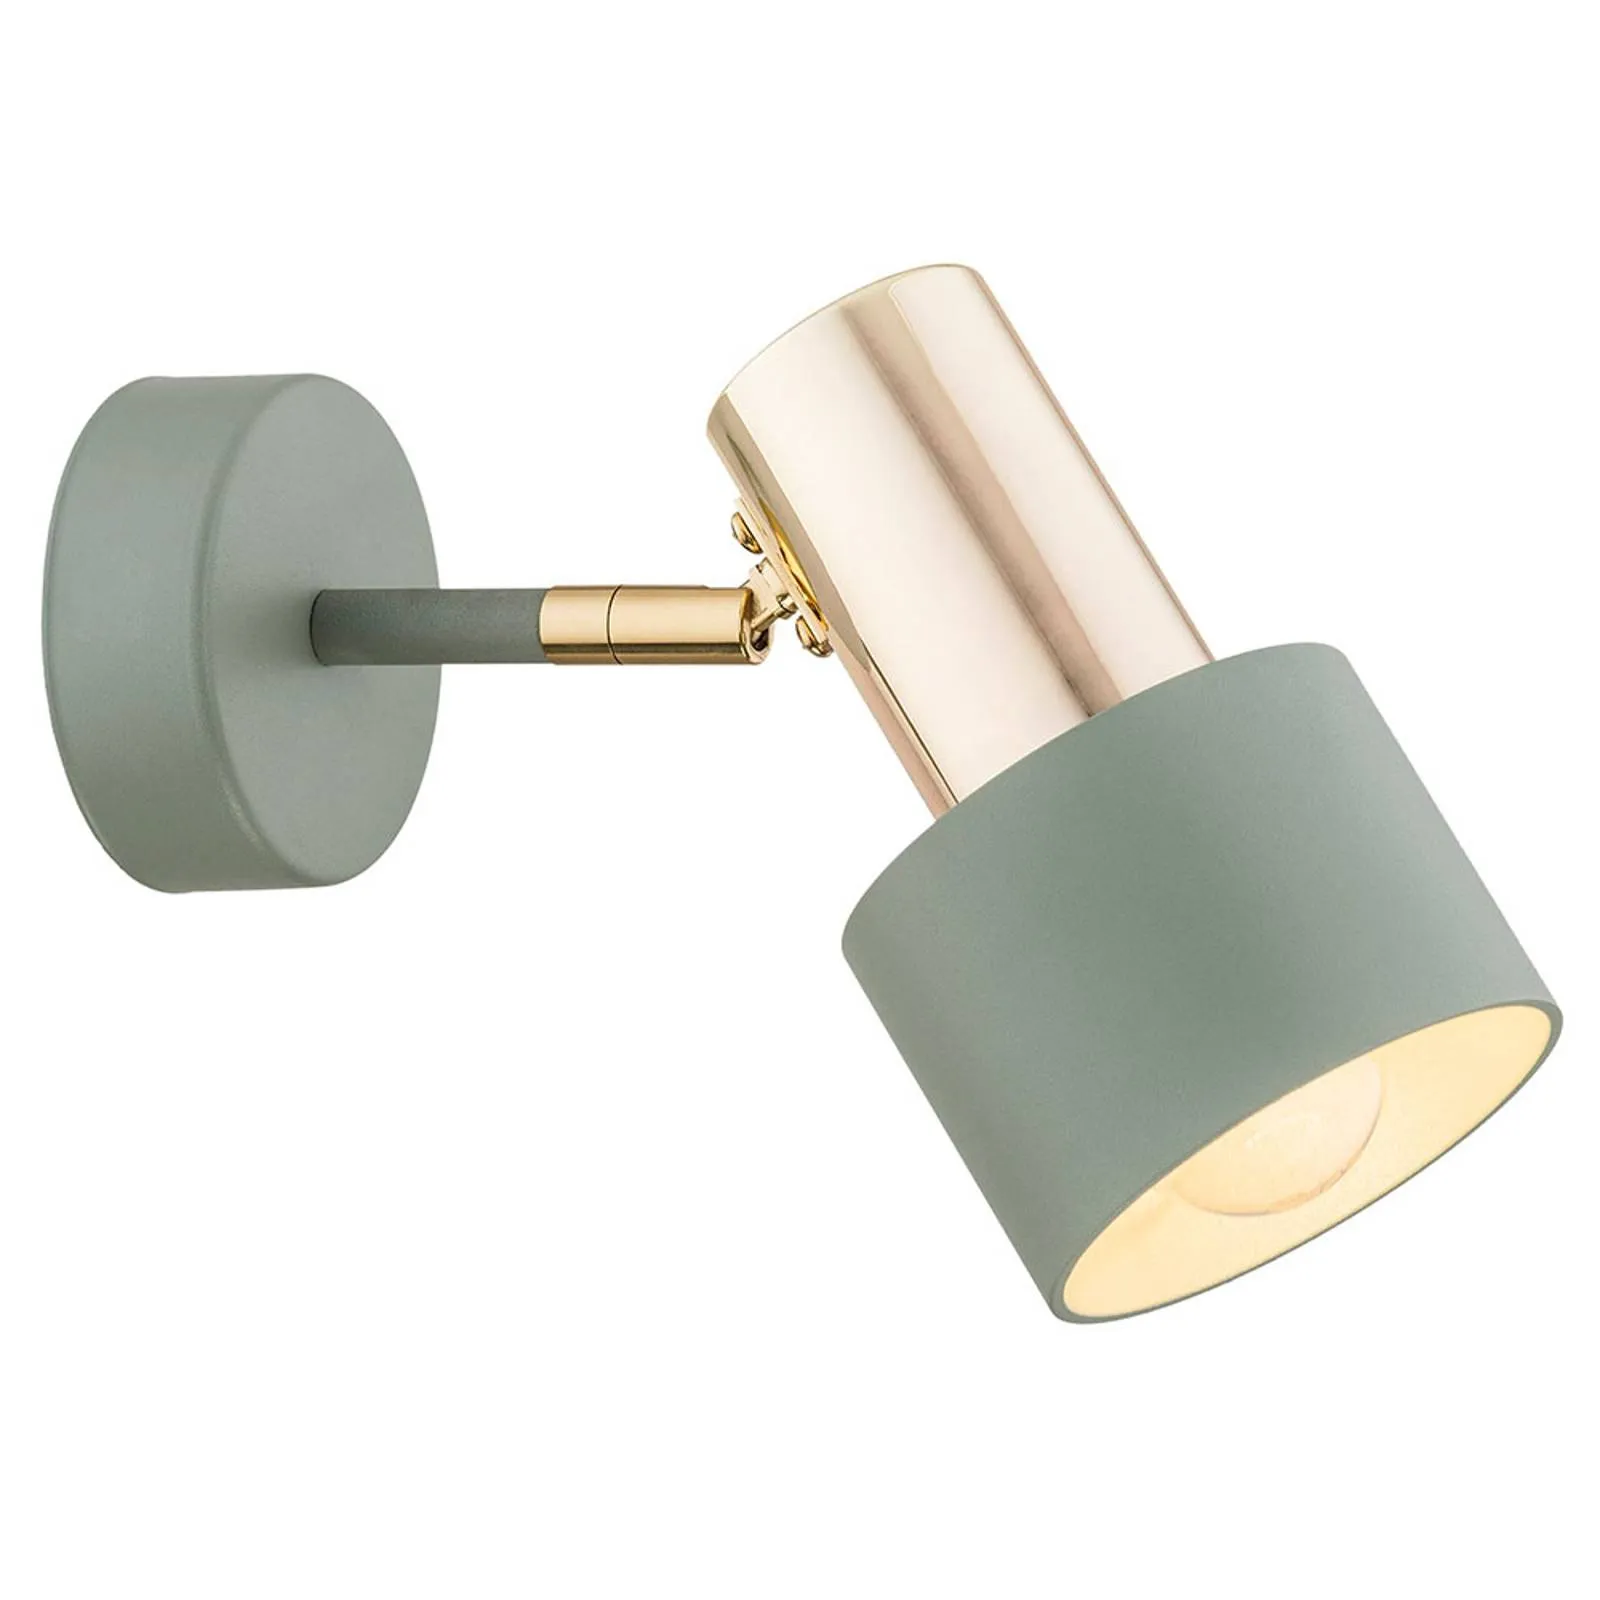 Destin wall spotlight, one-bulb green/brass